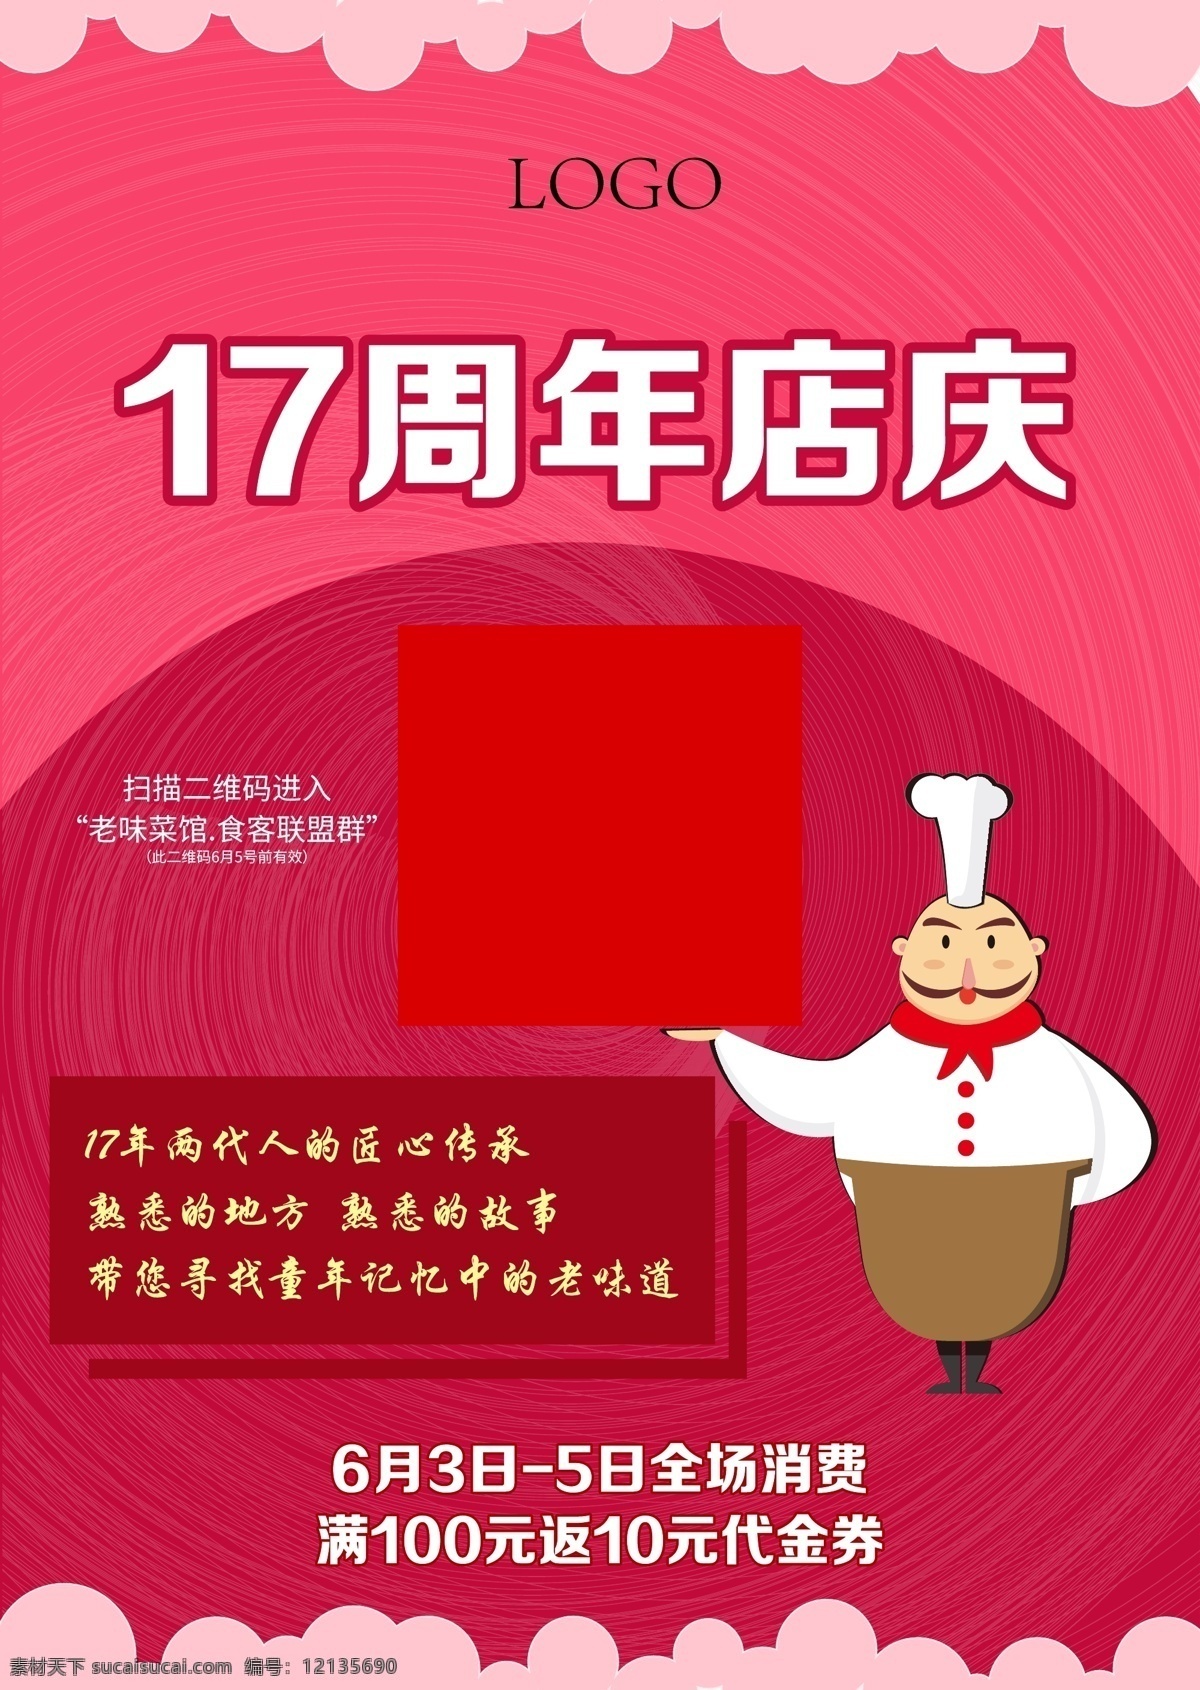 粉色海报 粉色 背景 粉图 卡通厨师 海报 食品 店庆 二维码 微信 周年庆